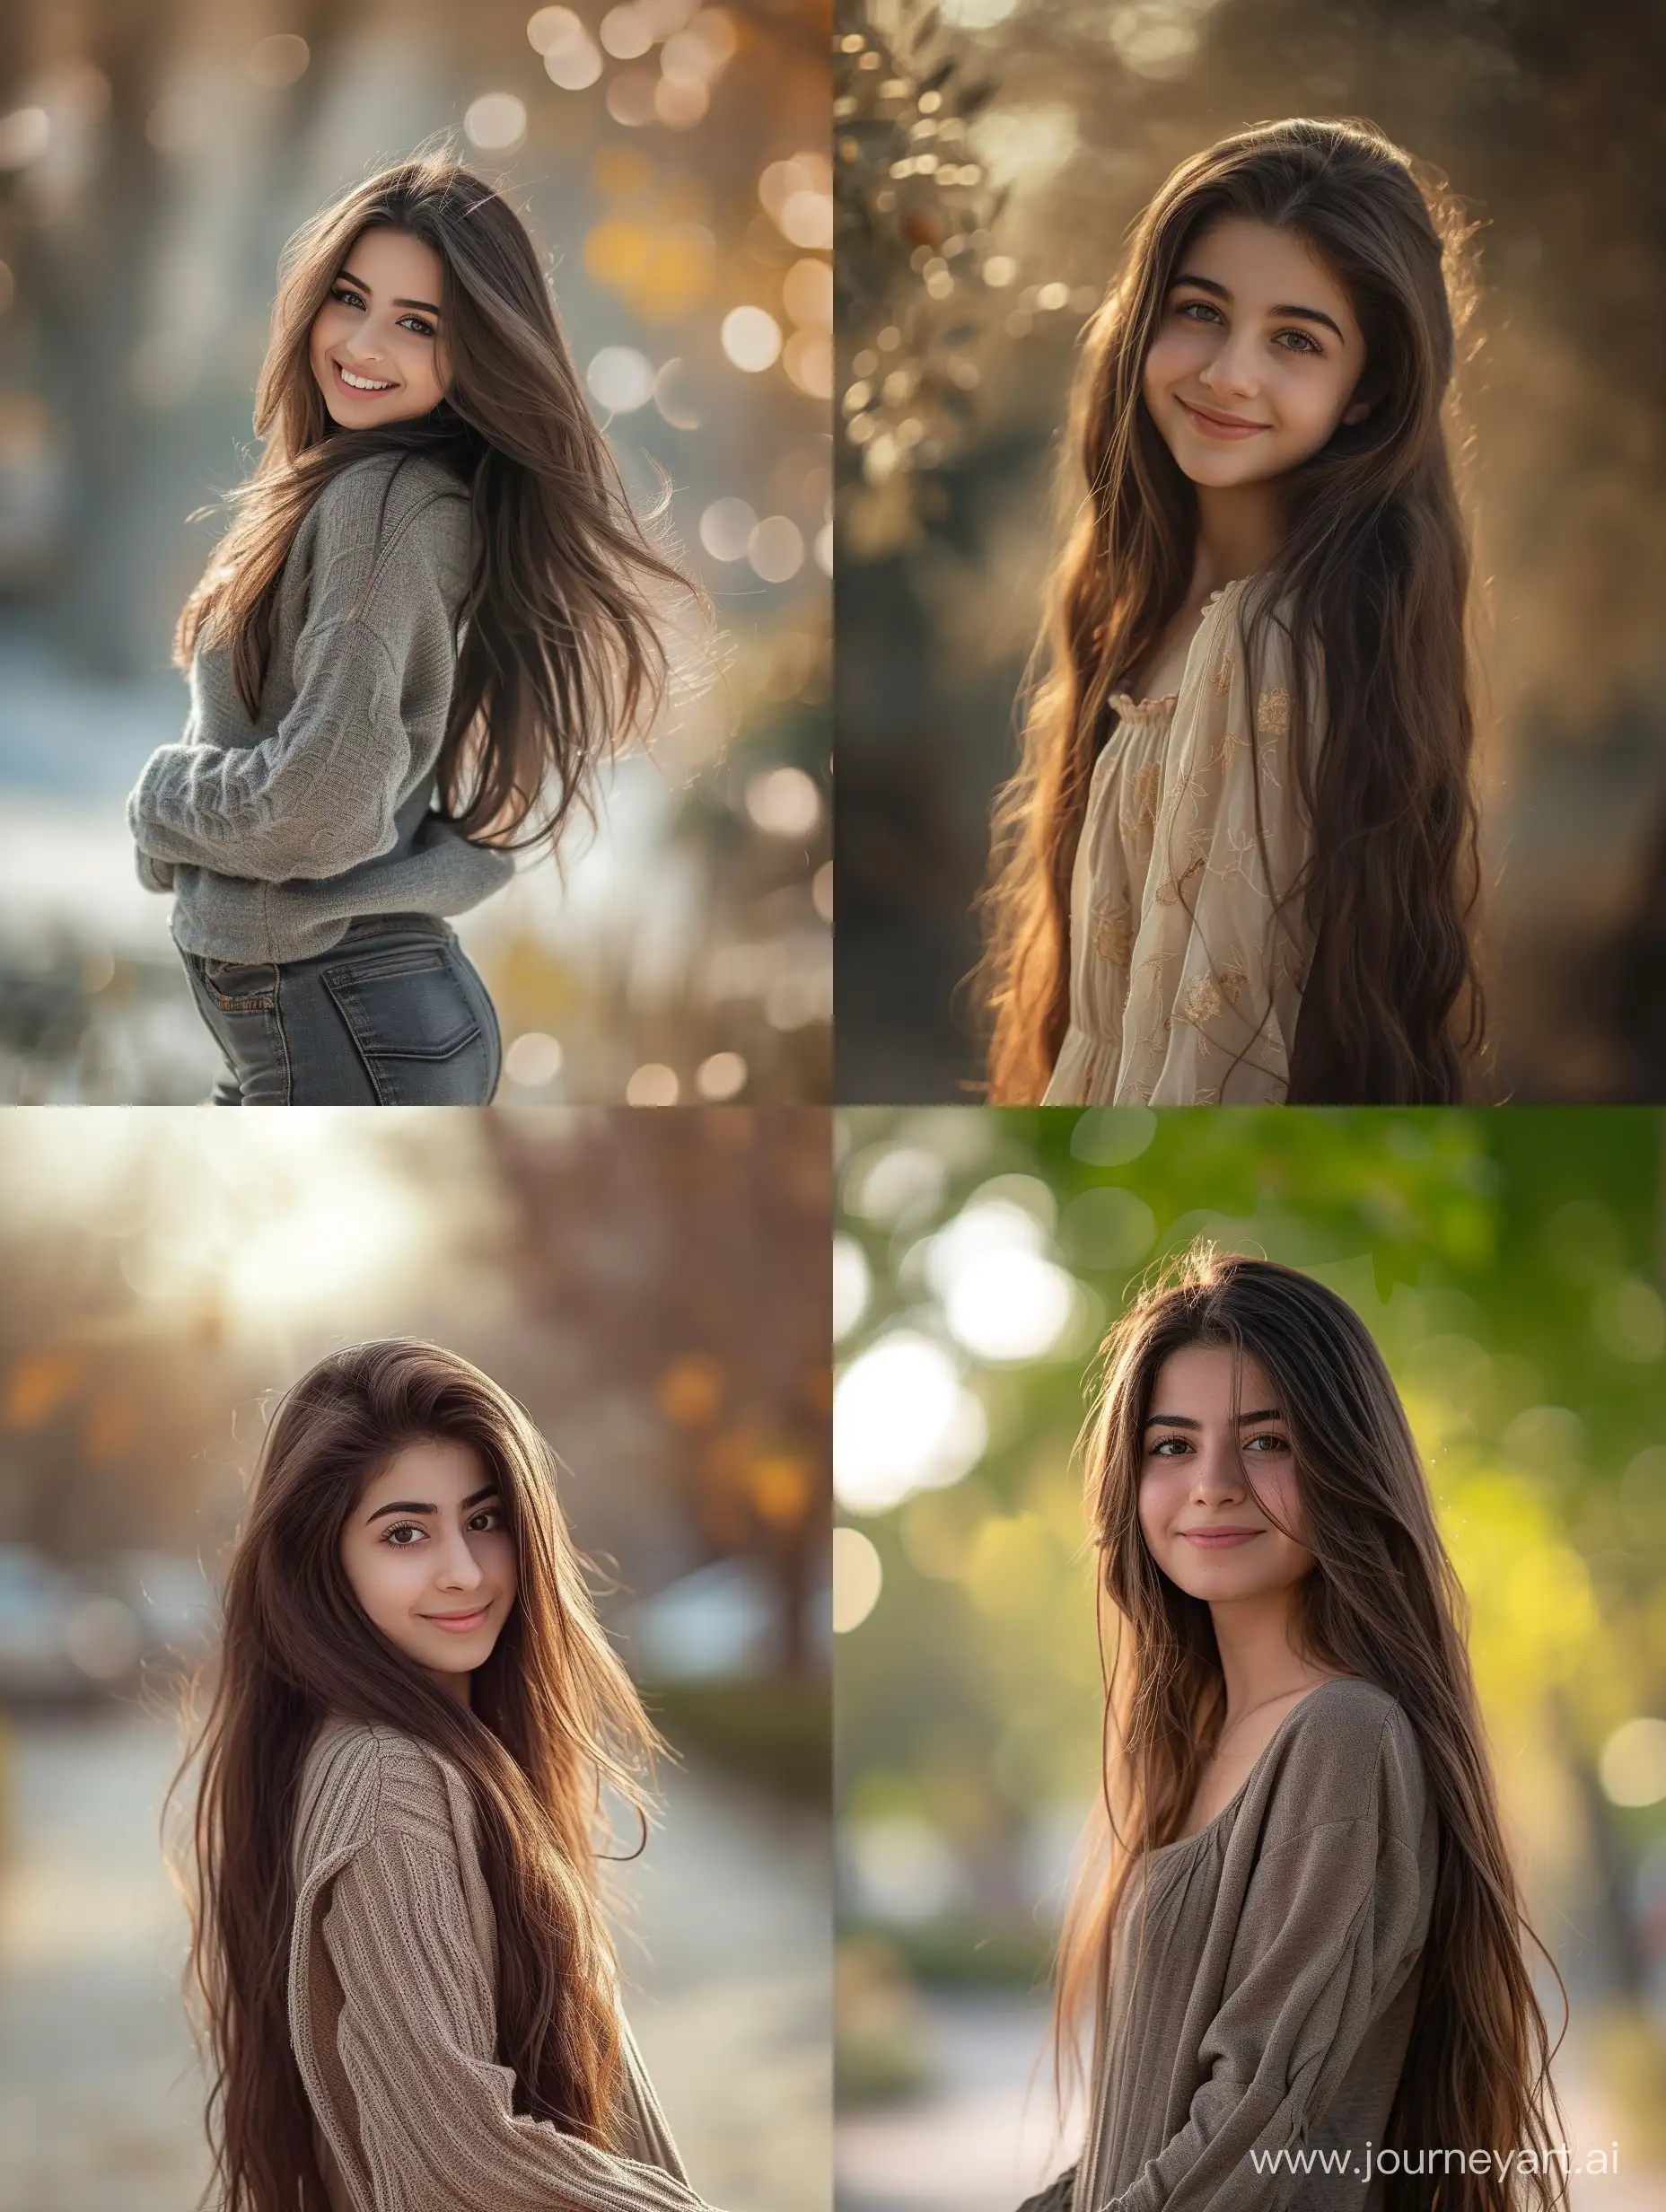 Joyful-Iranian-Woman-with-Dark-Brown-Hair-in-Full-Body-Pose